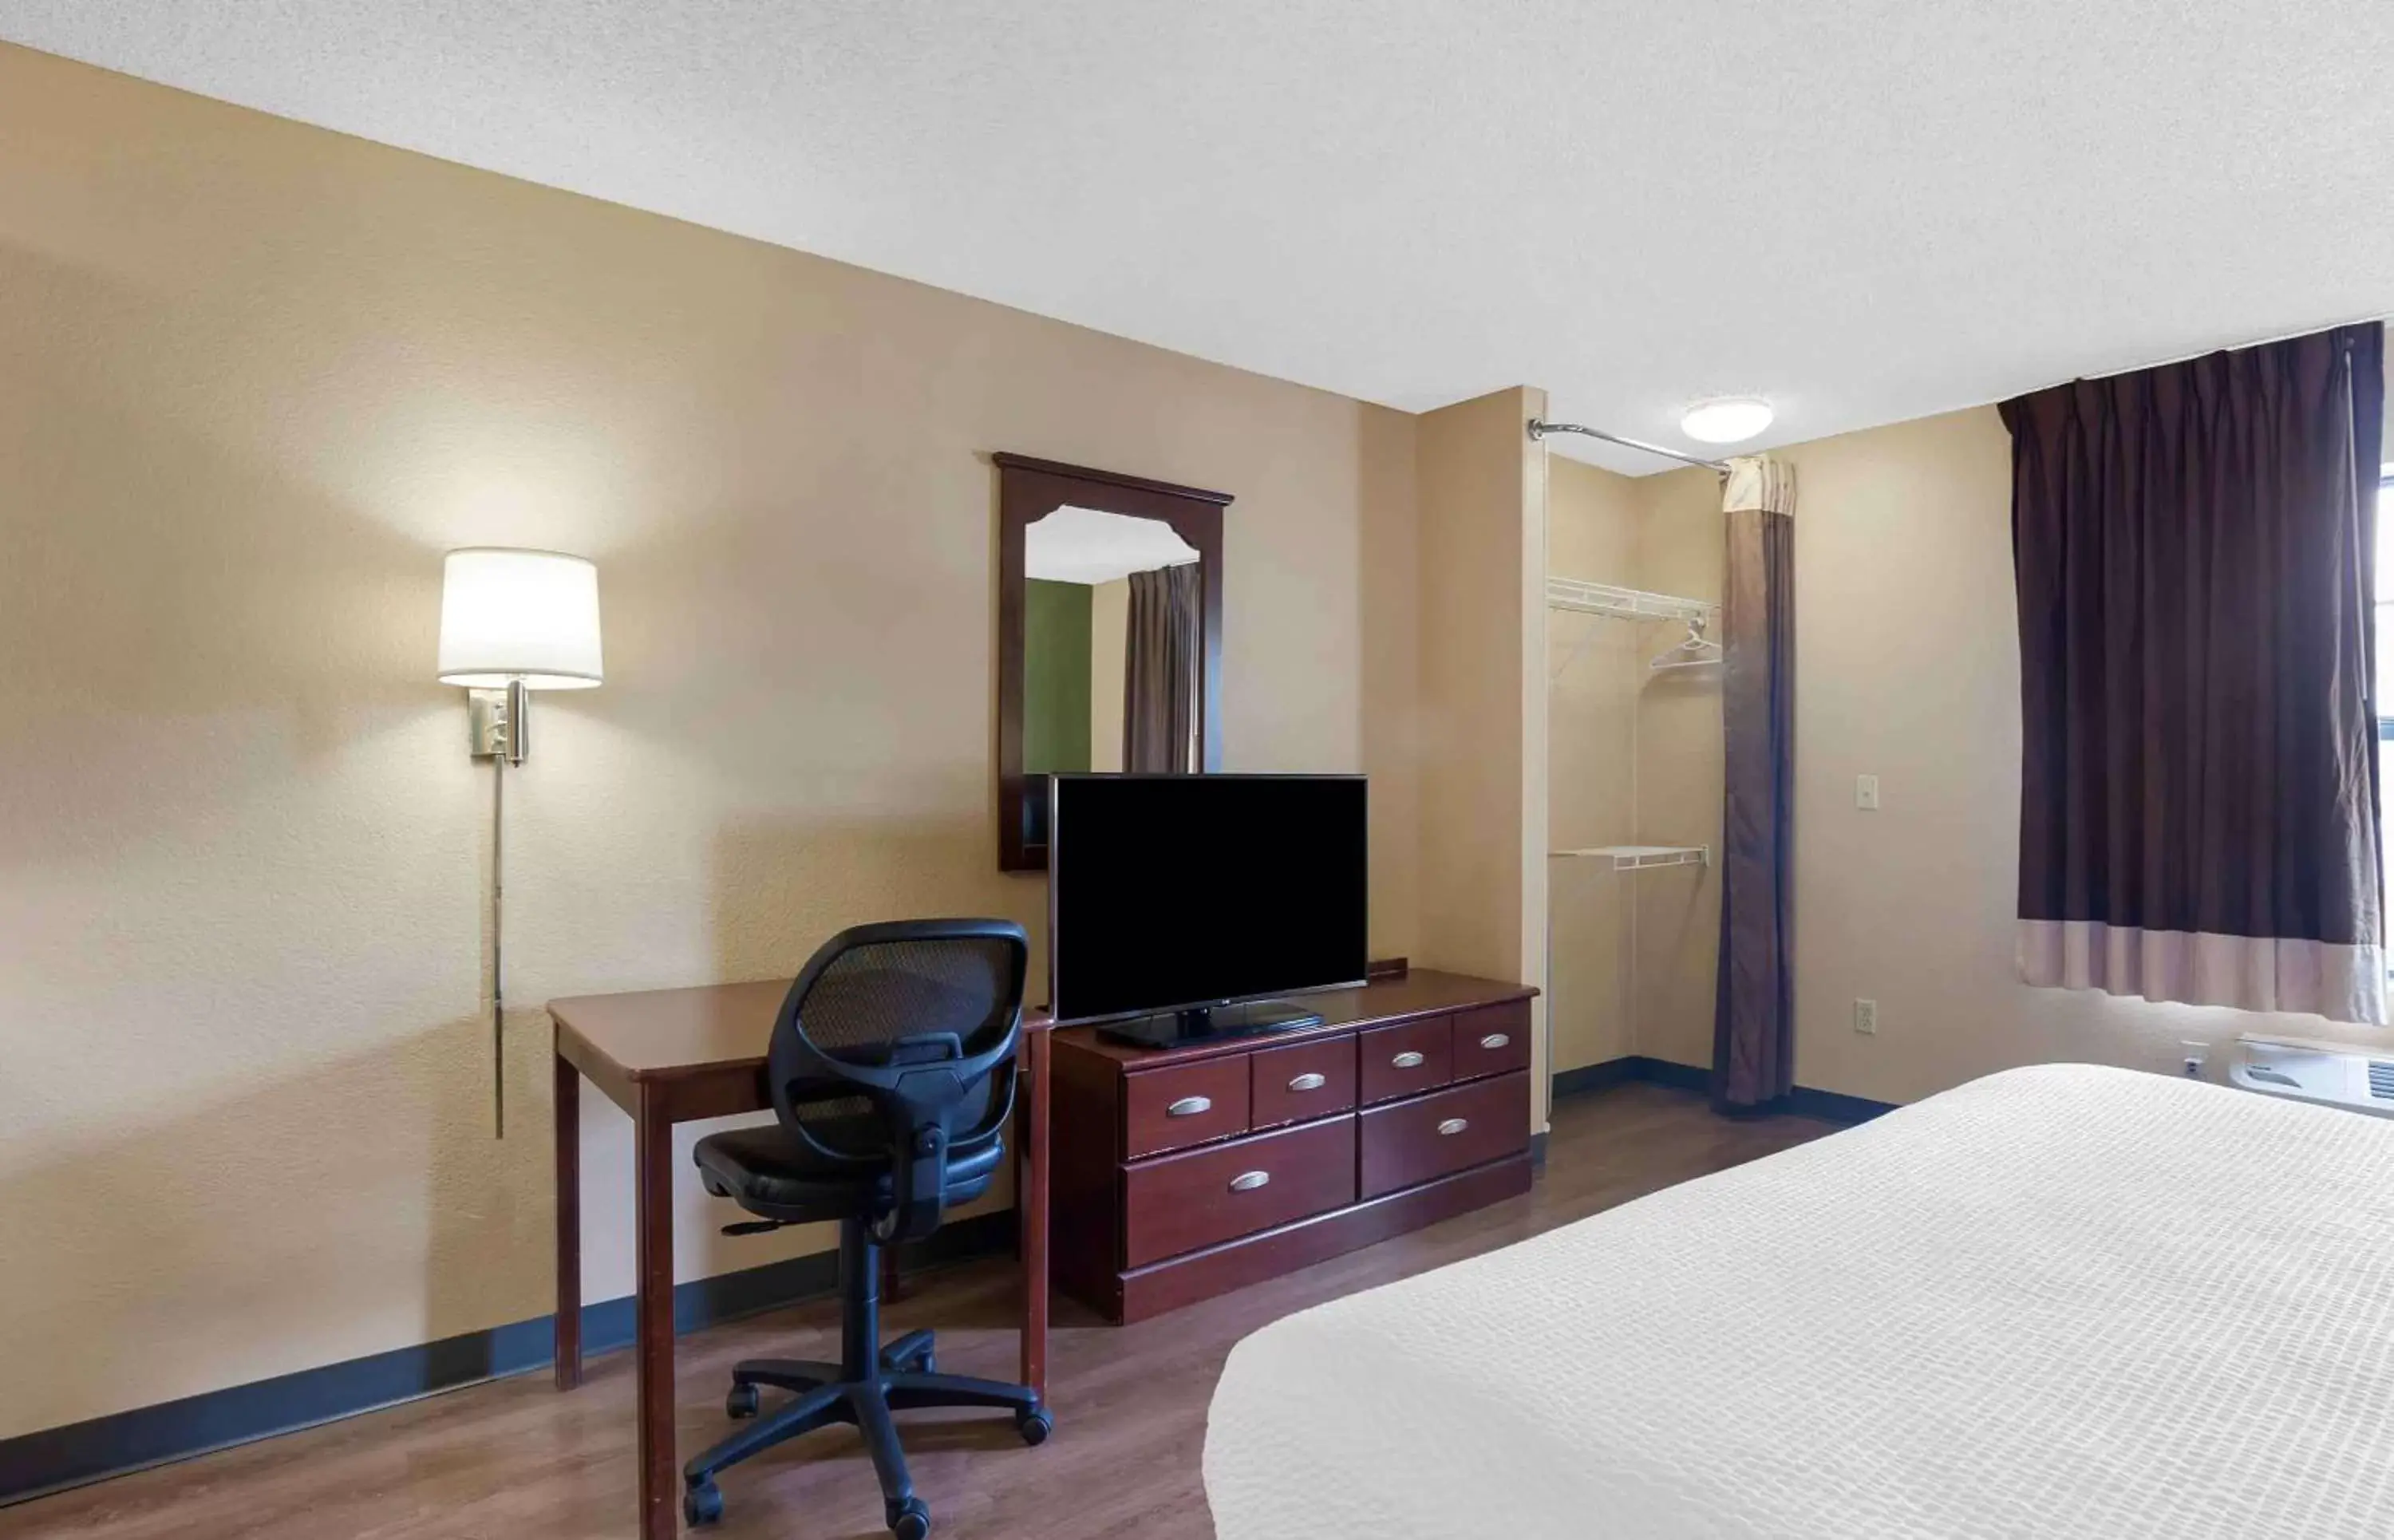 Bedroom, TV/Entertainment Center in Extended Stay America Suites - Philadelphia - Horsham - Dresher Rd